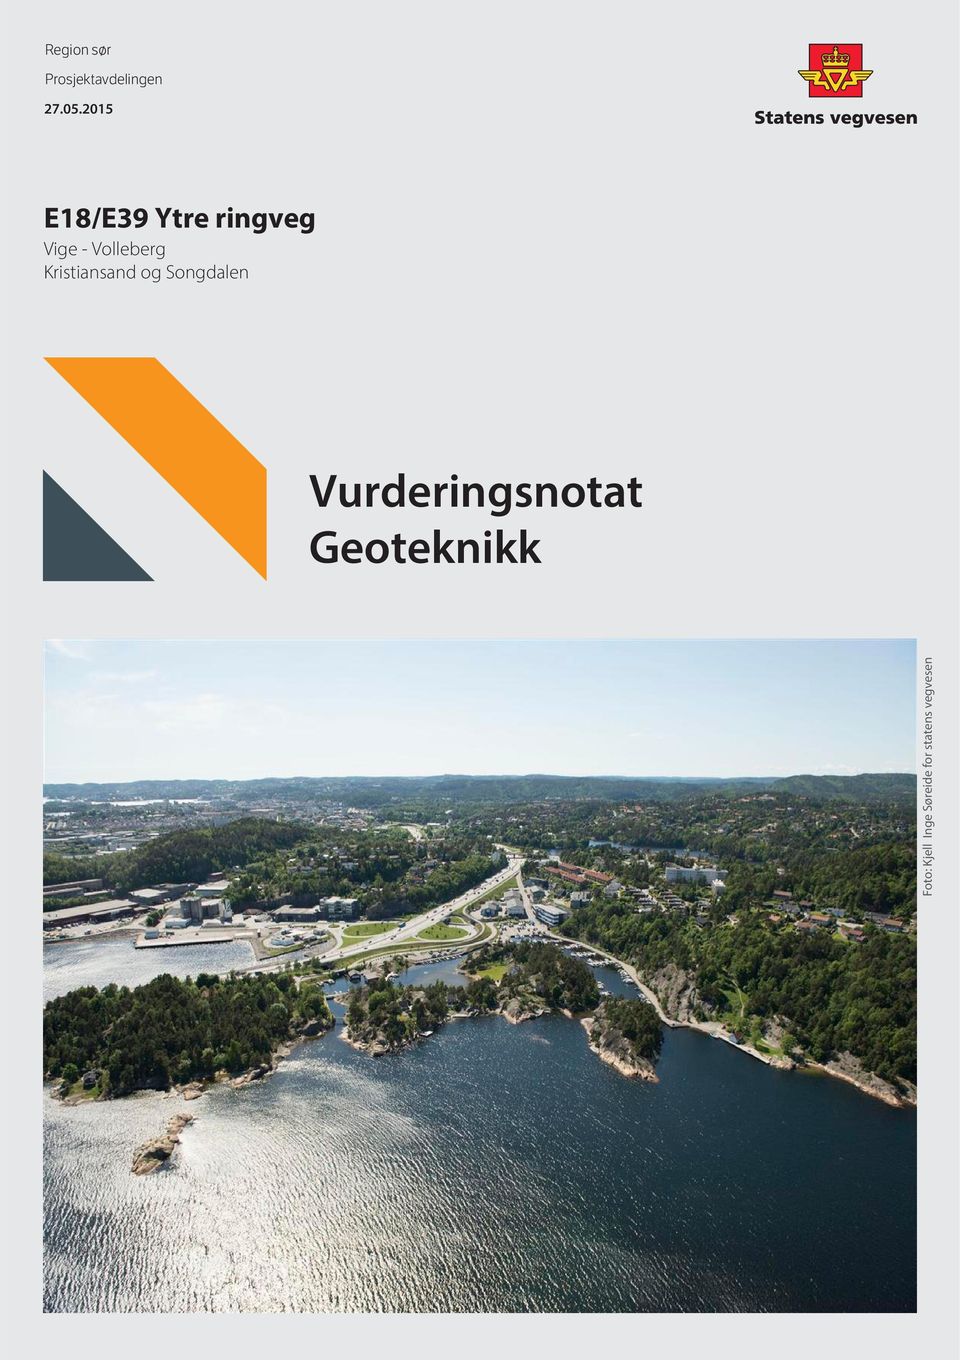 Kristiansand og Songdalen Vurderingsnotat